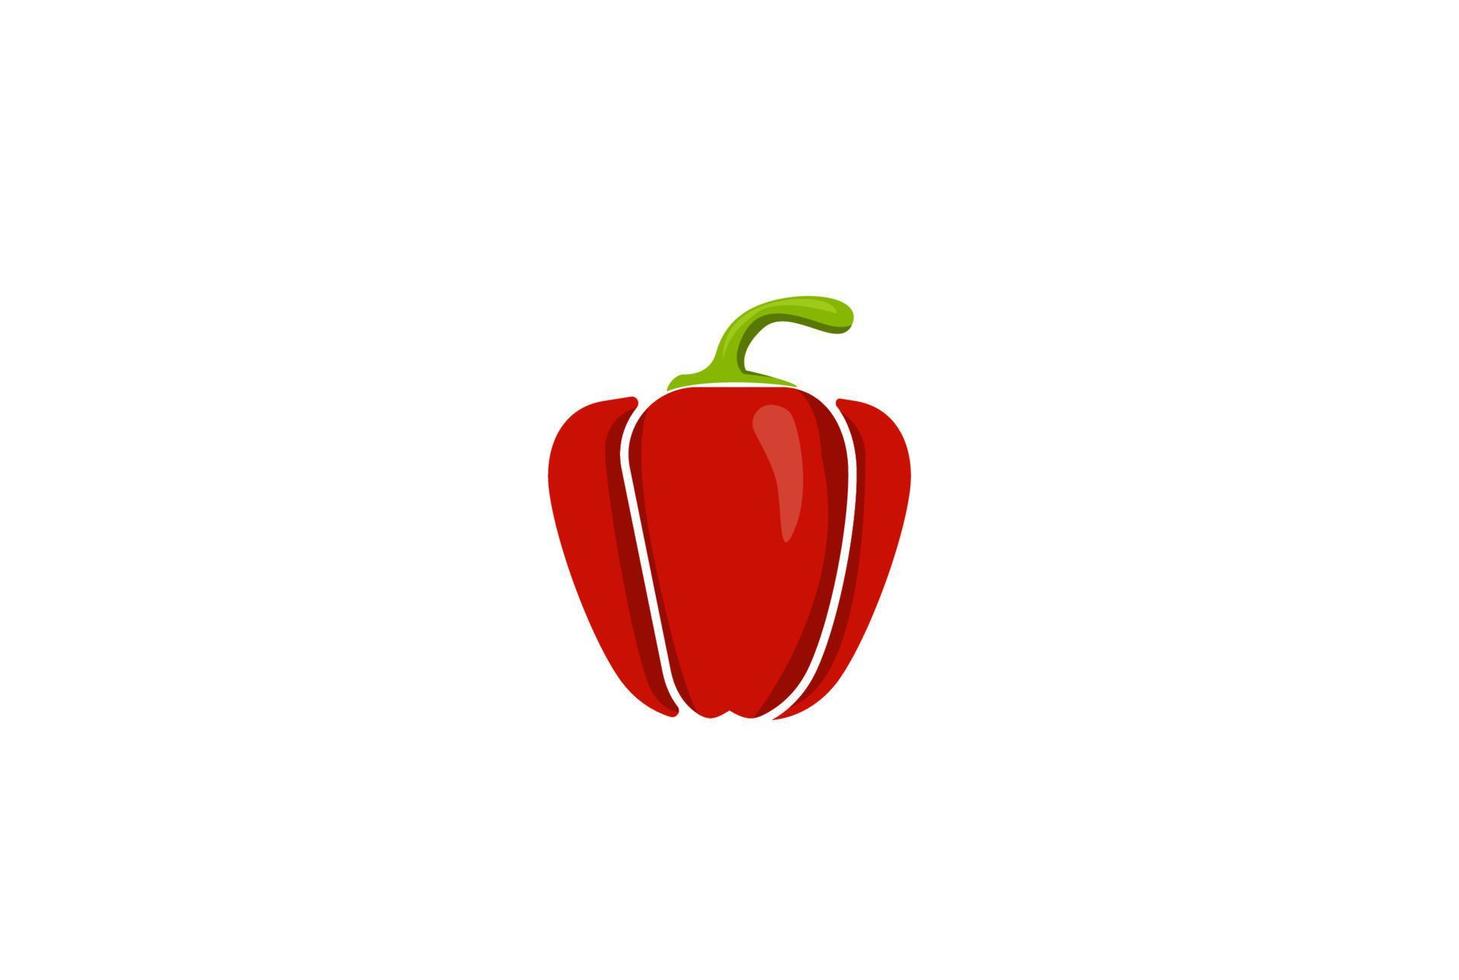 Red Hot Paprika Badge Emblem For Restaurant Cook or Vegetable Farm Label Logo Design Vector